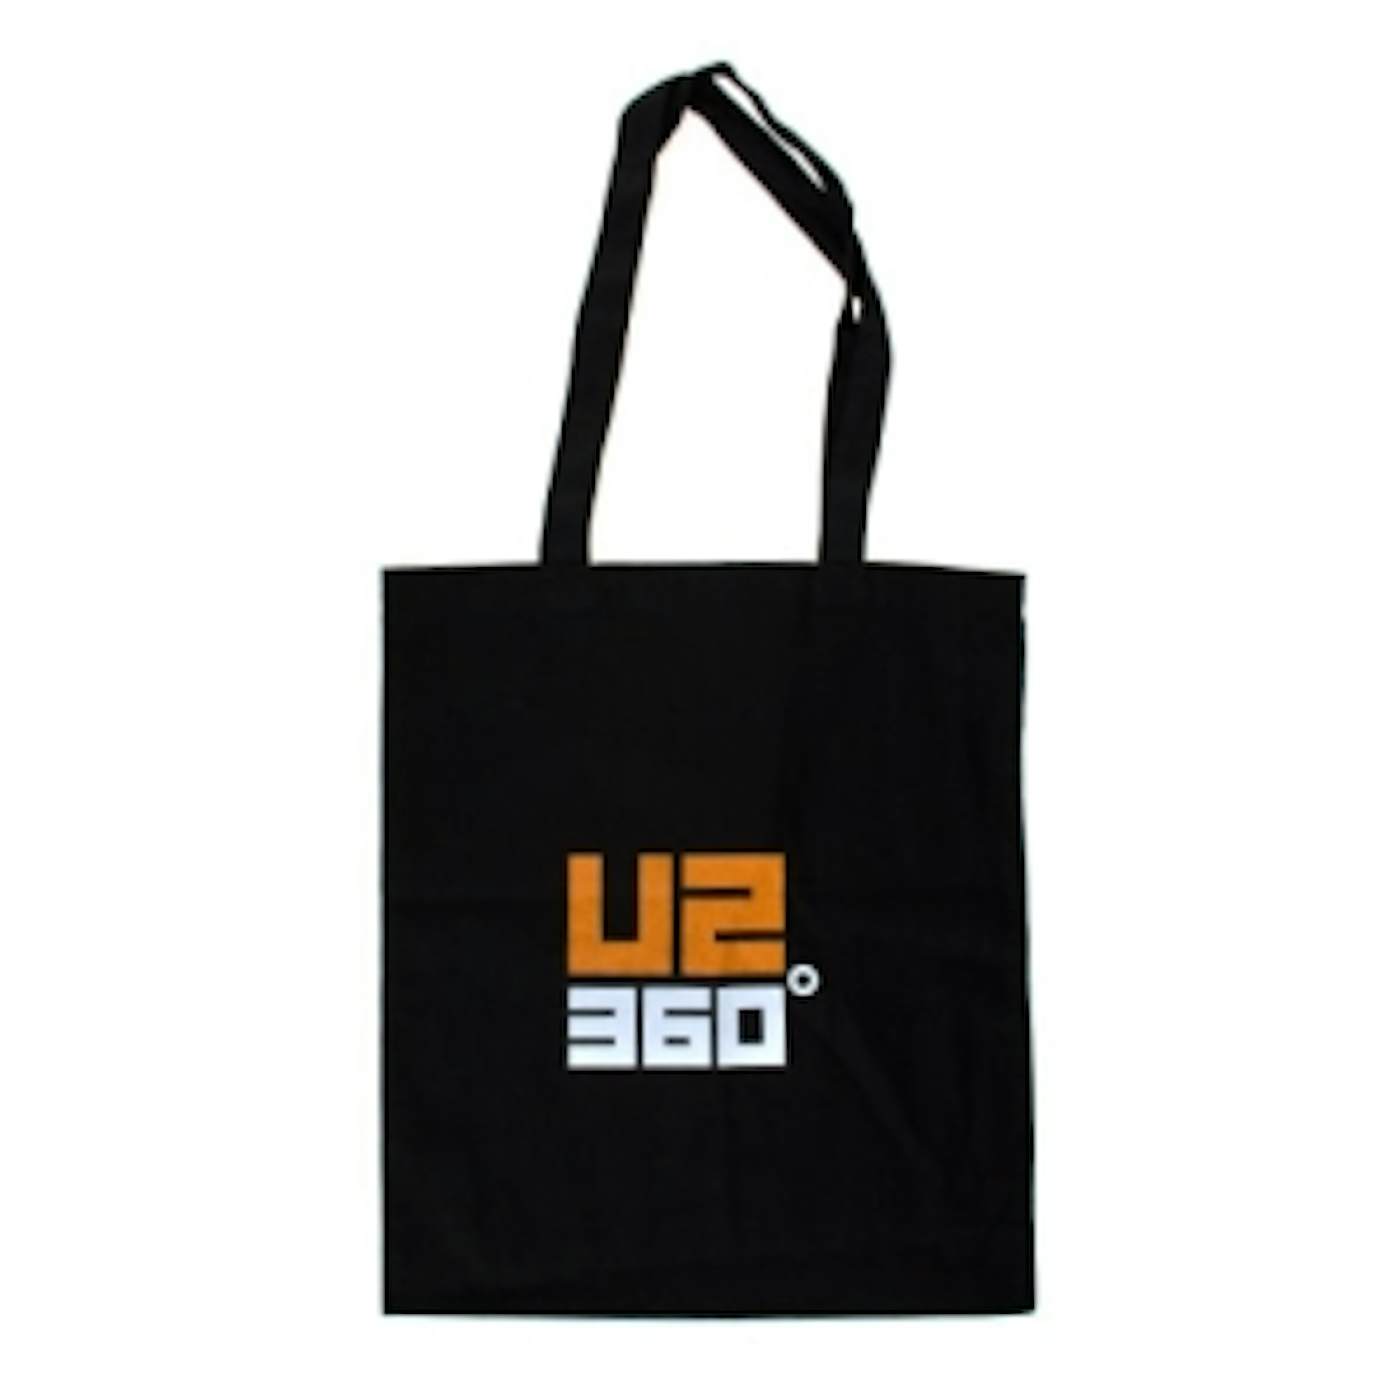 U2 360 Tote Bag